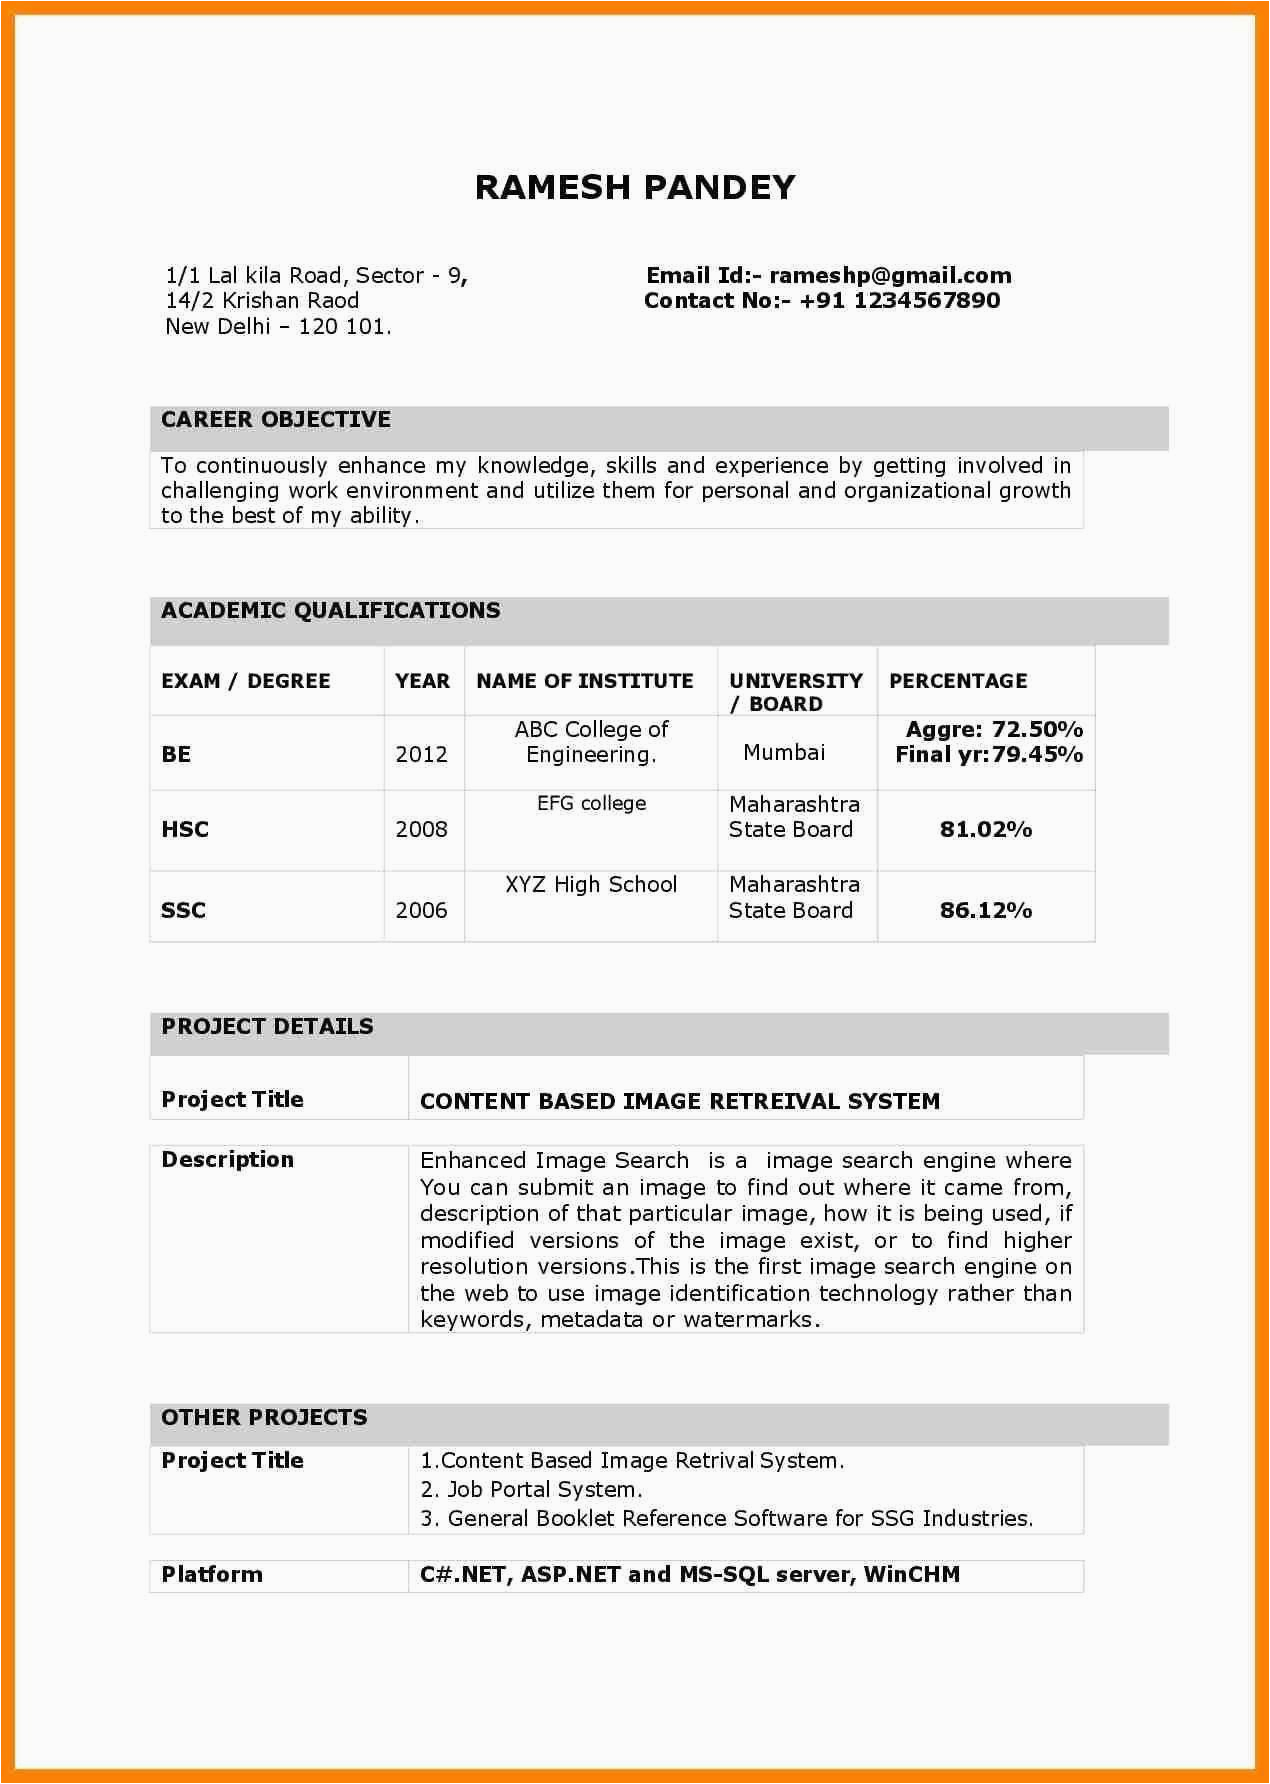 Sample Resume for Fresher School Teacher In India Resume format India Resume format